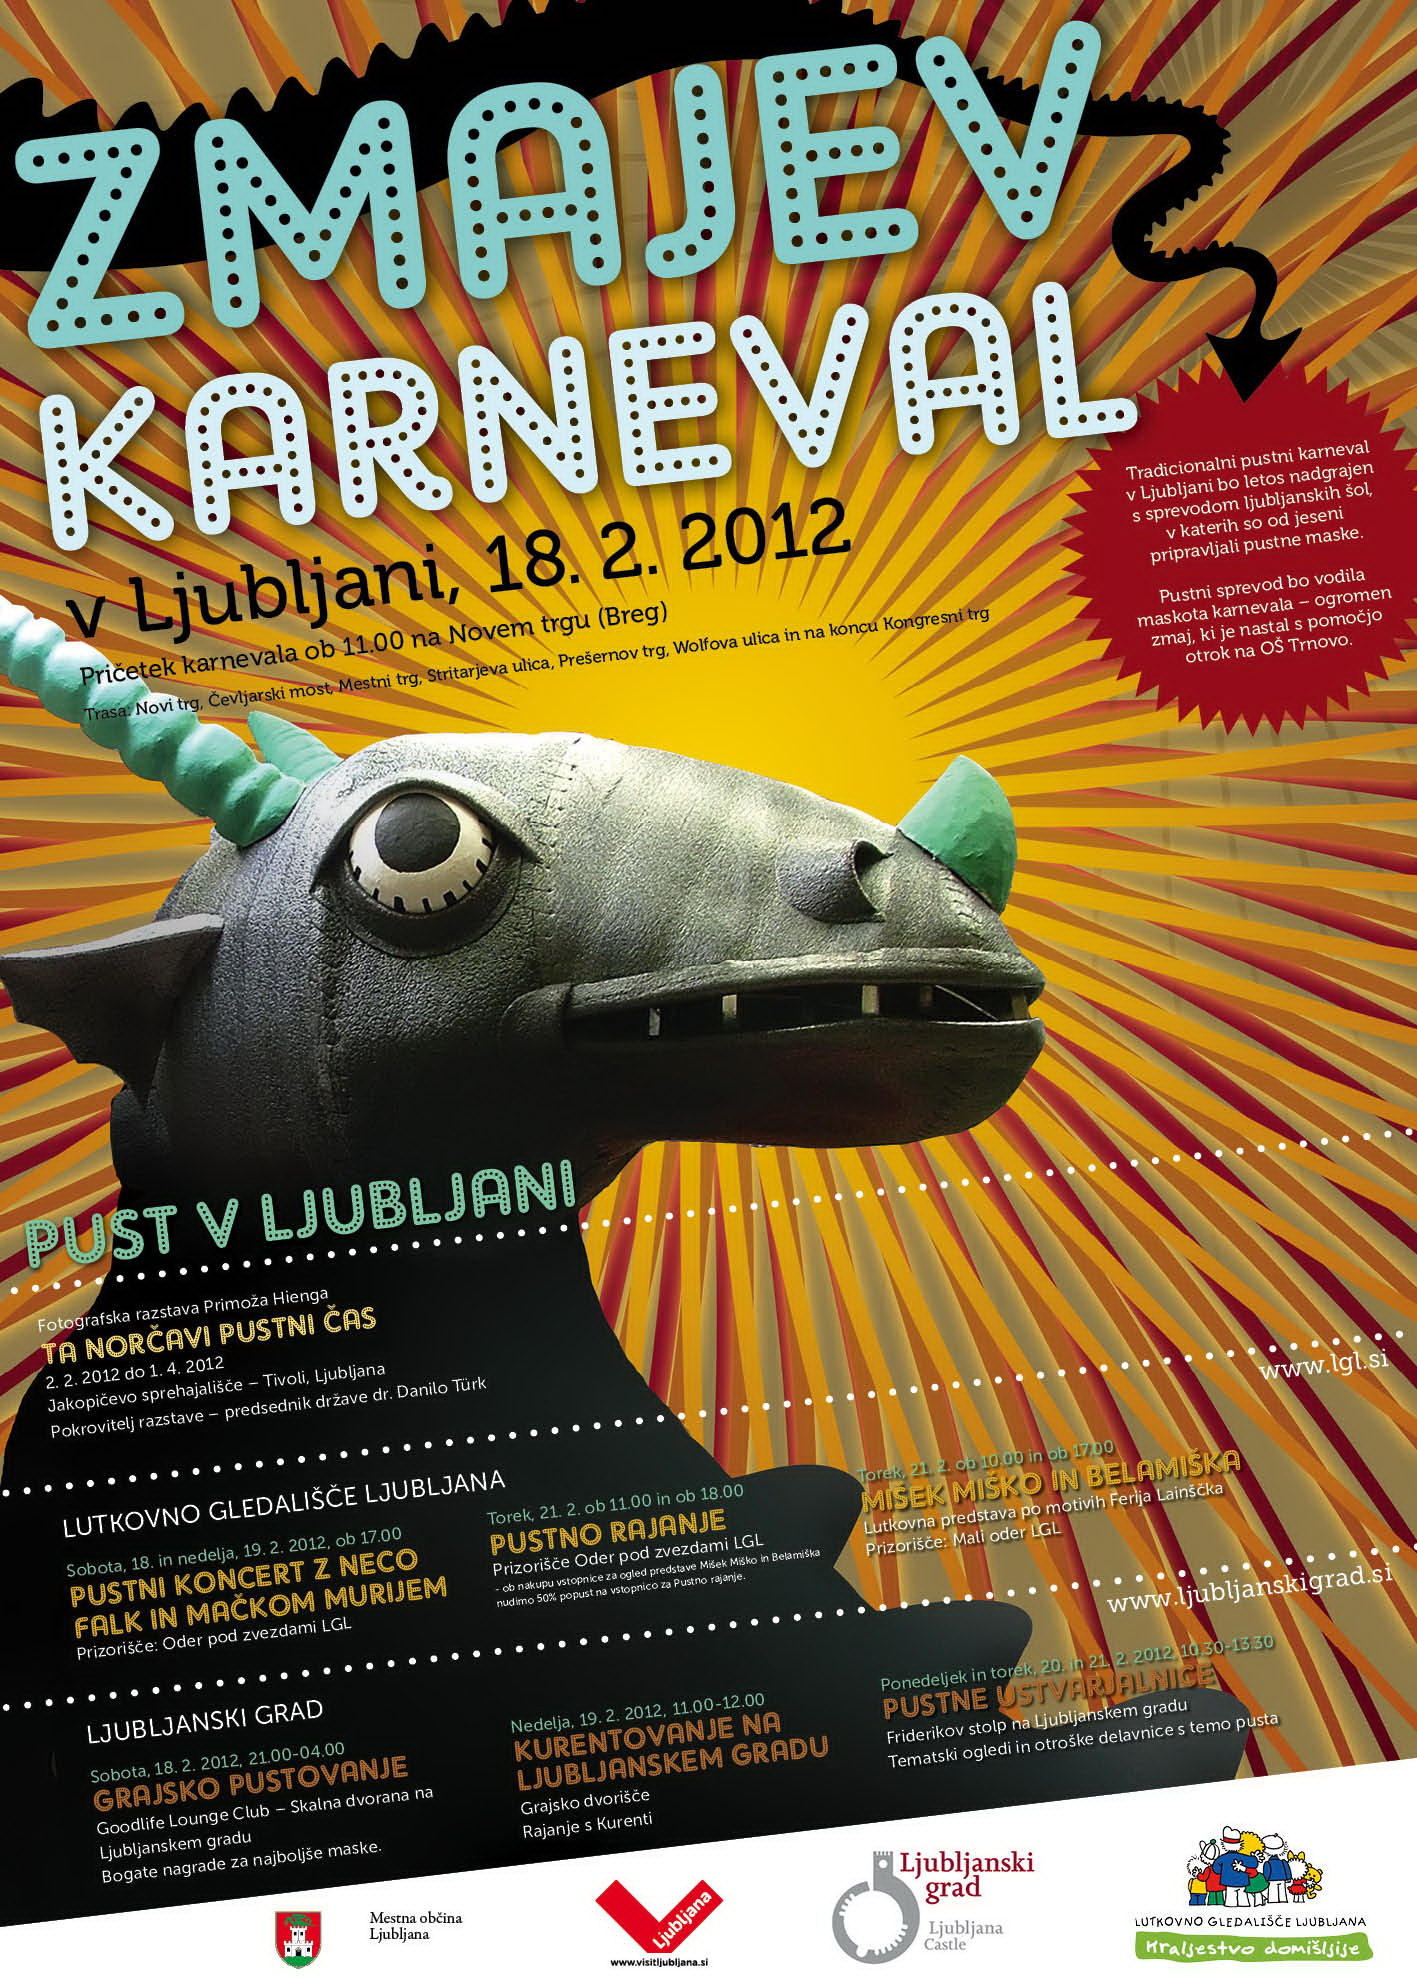 Zmaj prihaja v Ljubljano! Pustna Ljubljana v znamenju zmajevega karnevala